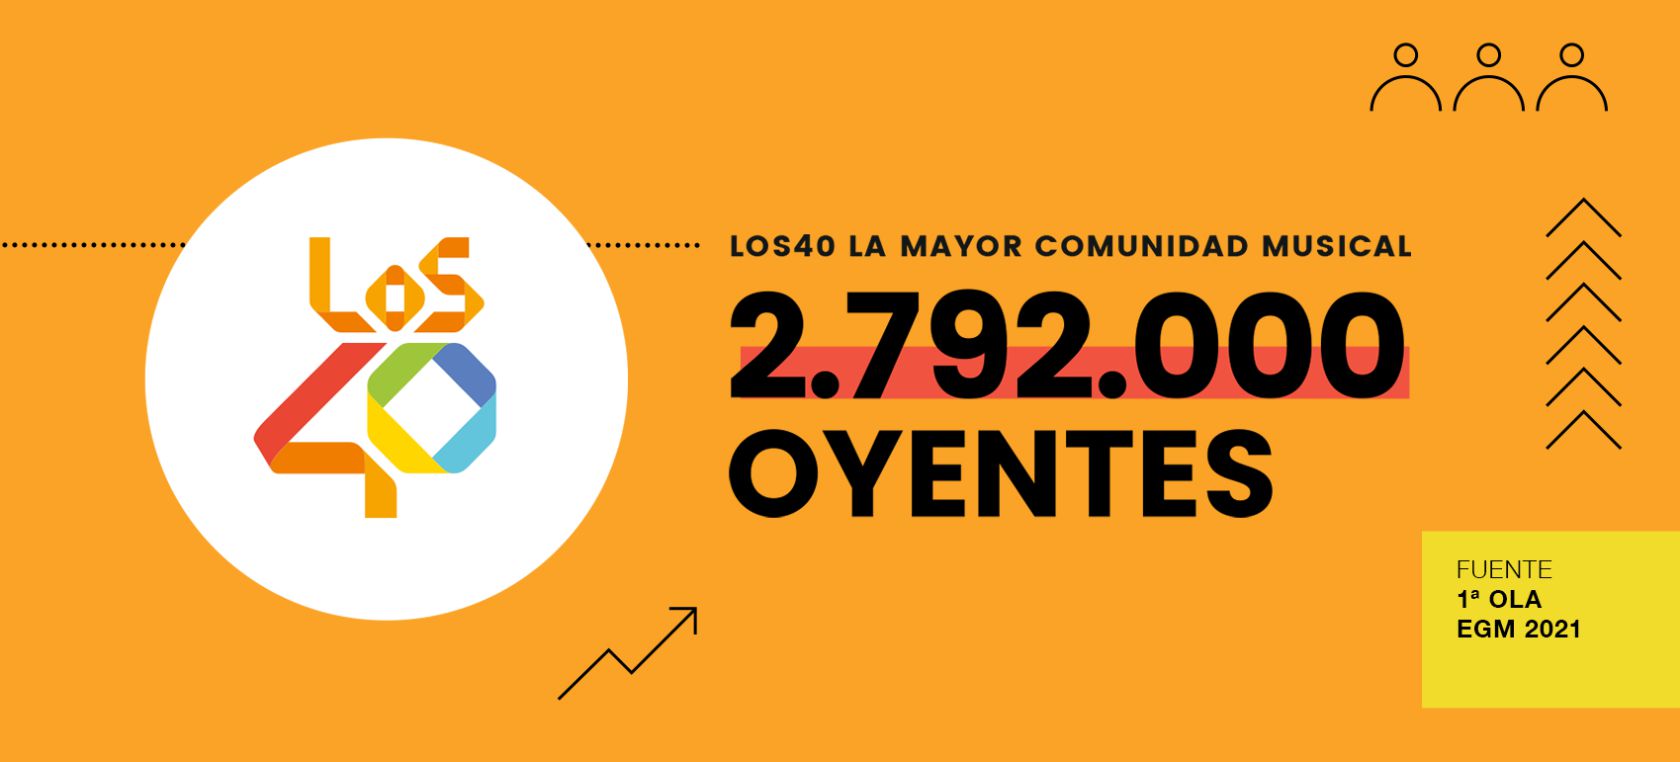 armario sistema calibre LOS40, la mayor comunidad musical de España, con 2.792.000 oyentes | Radio  | LOS40